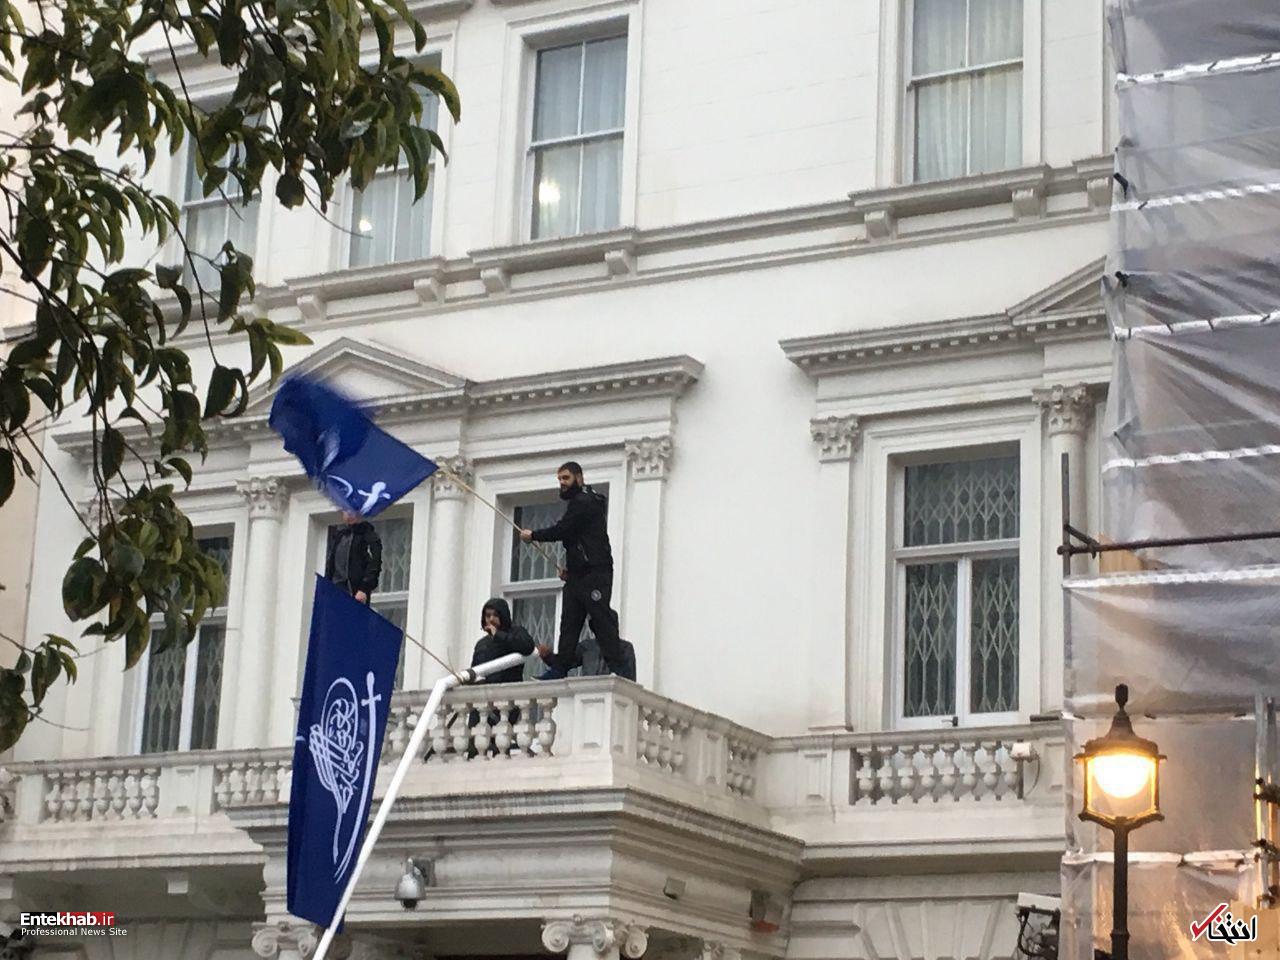 فوری/ حمله به سفارت ایران در لندن / تصرف بالکن / مهاجمان پرچم ایران را پایین کشیدند +ویدیو / سفیر: مهاجمان از طرفداران فرقه شیرازی هستند / با قمه و چماق وارد شدند / سخنگوی وزارت خارجه: سفارت اشغال نشده